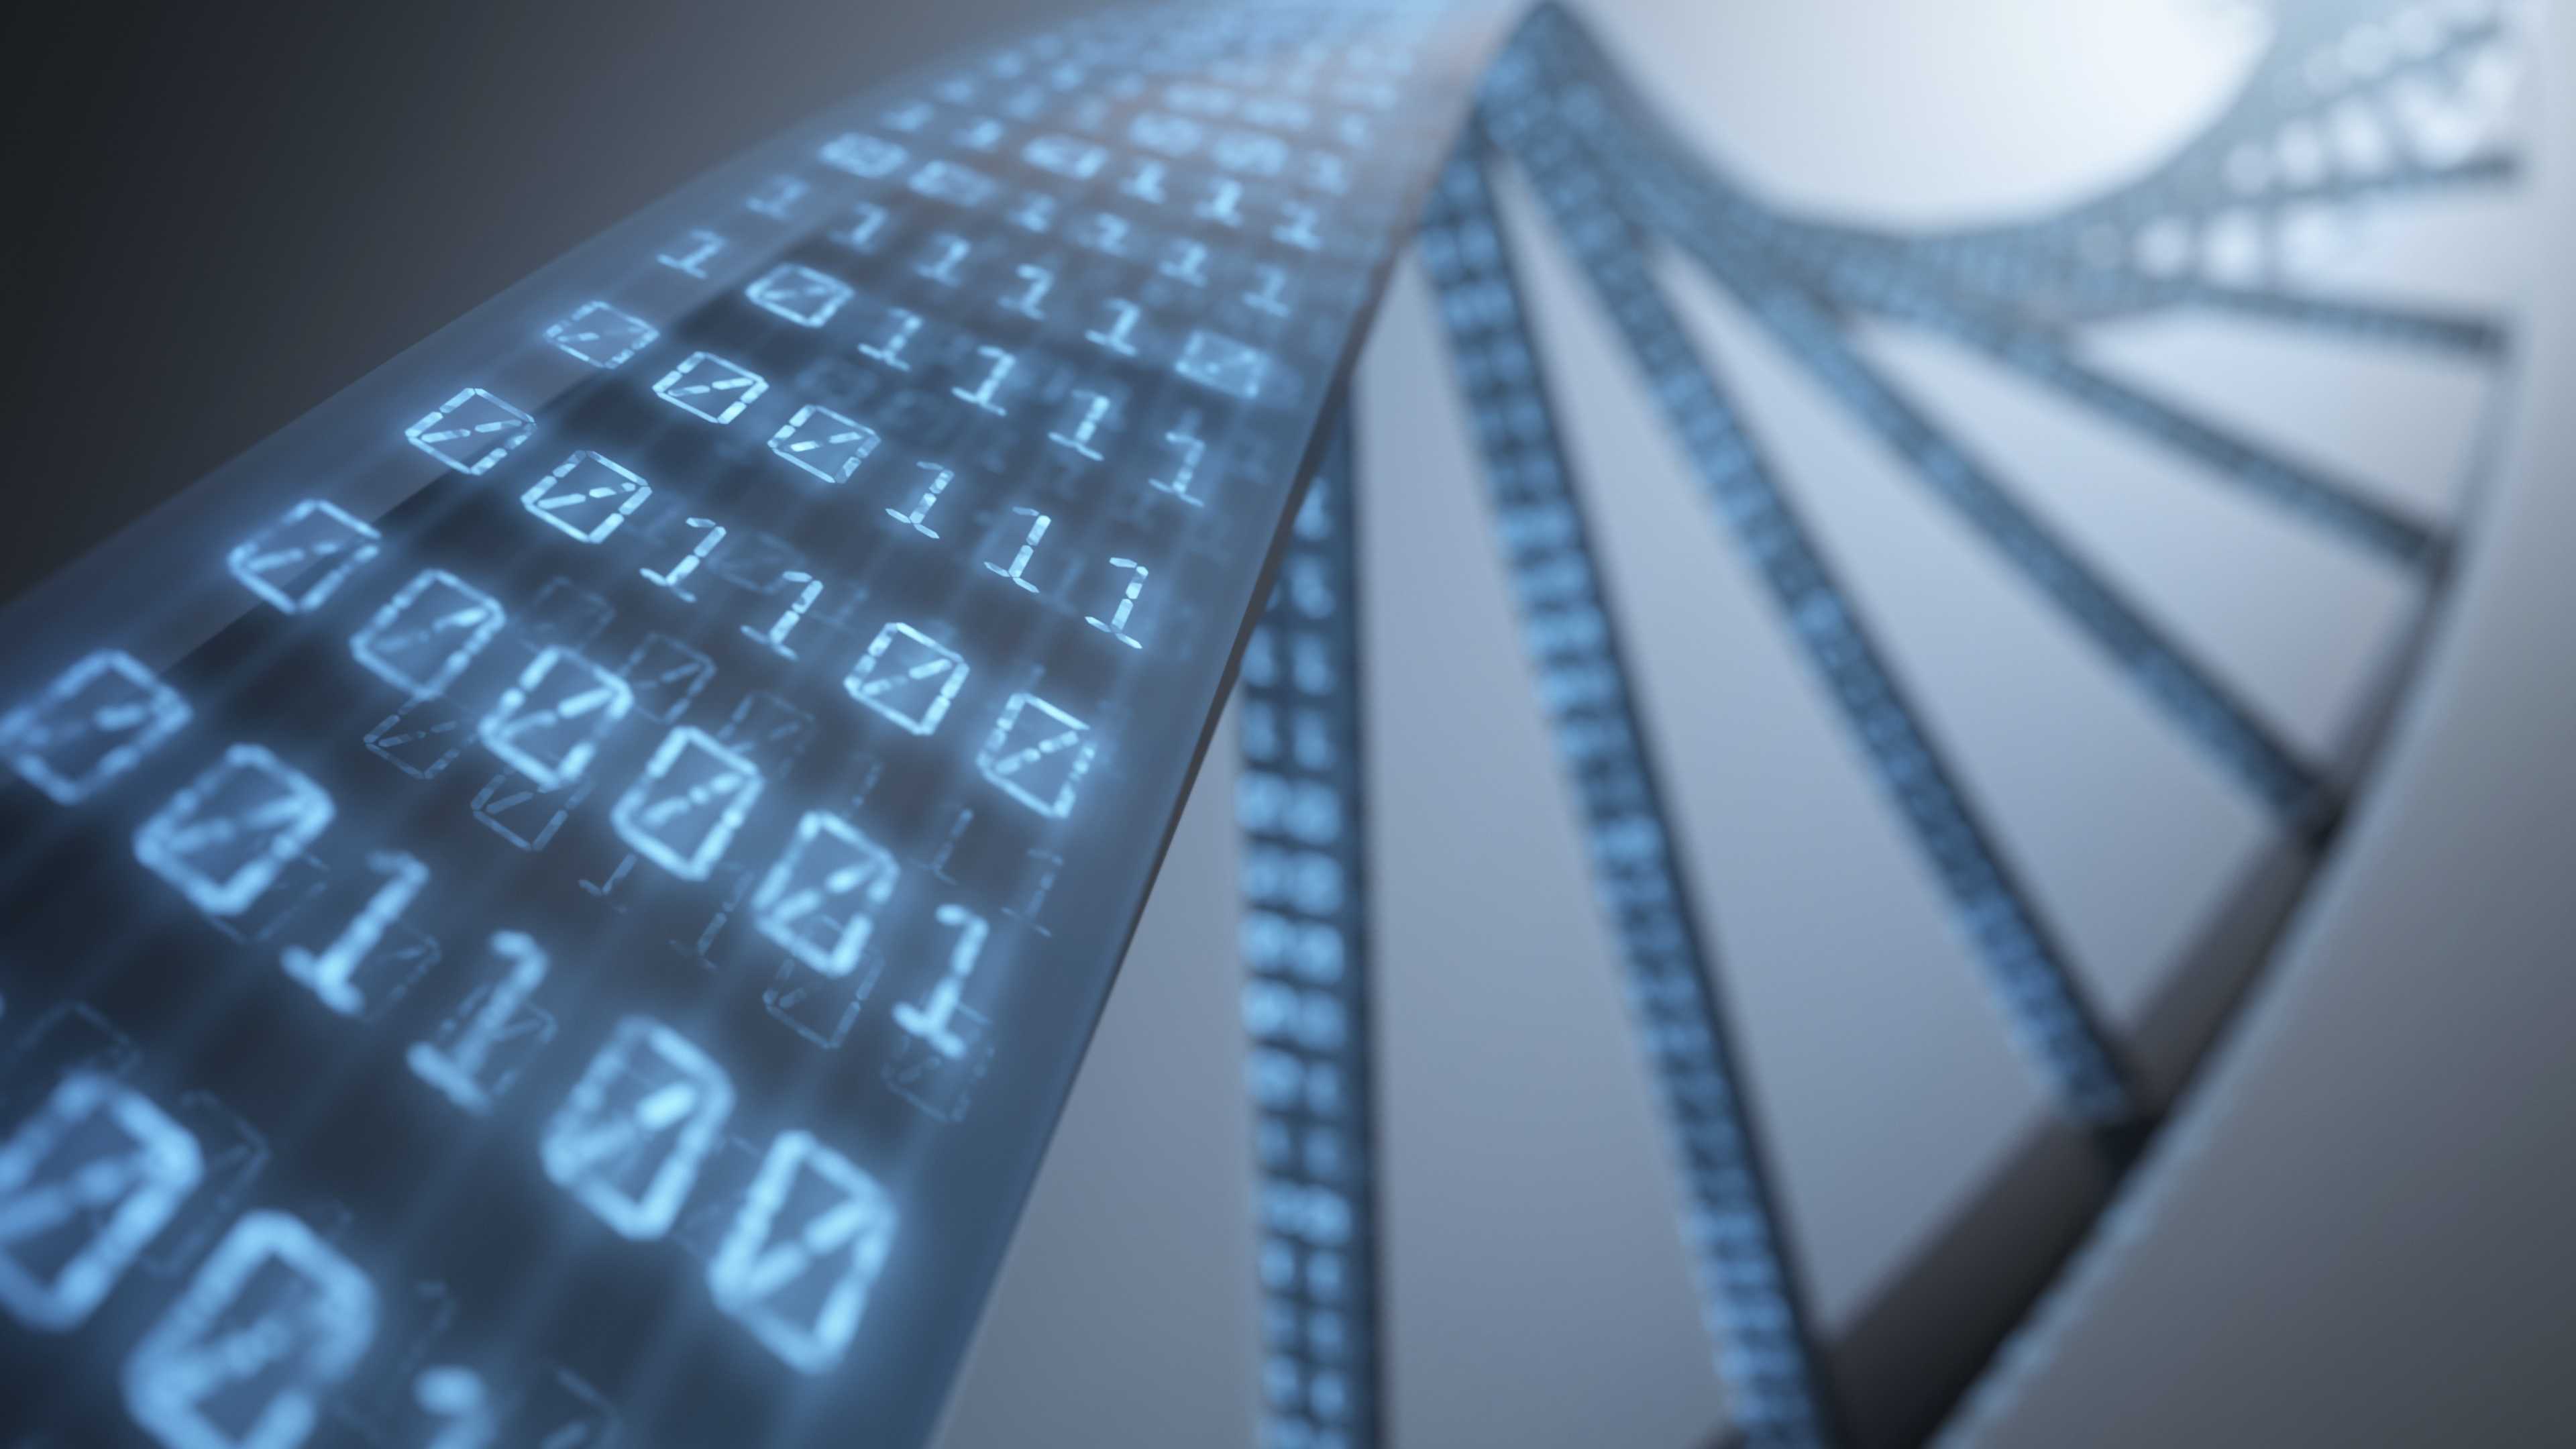 ДНК может быть хранилищем цифровой информации